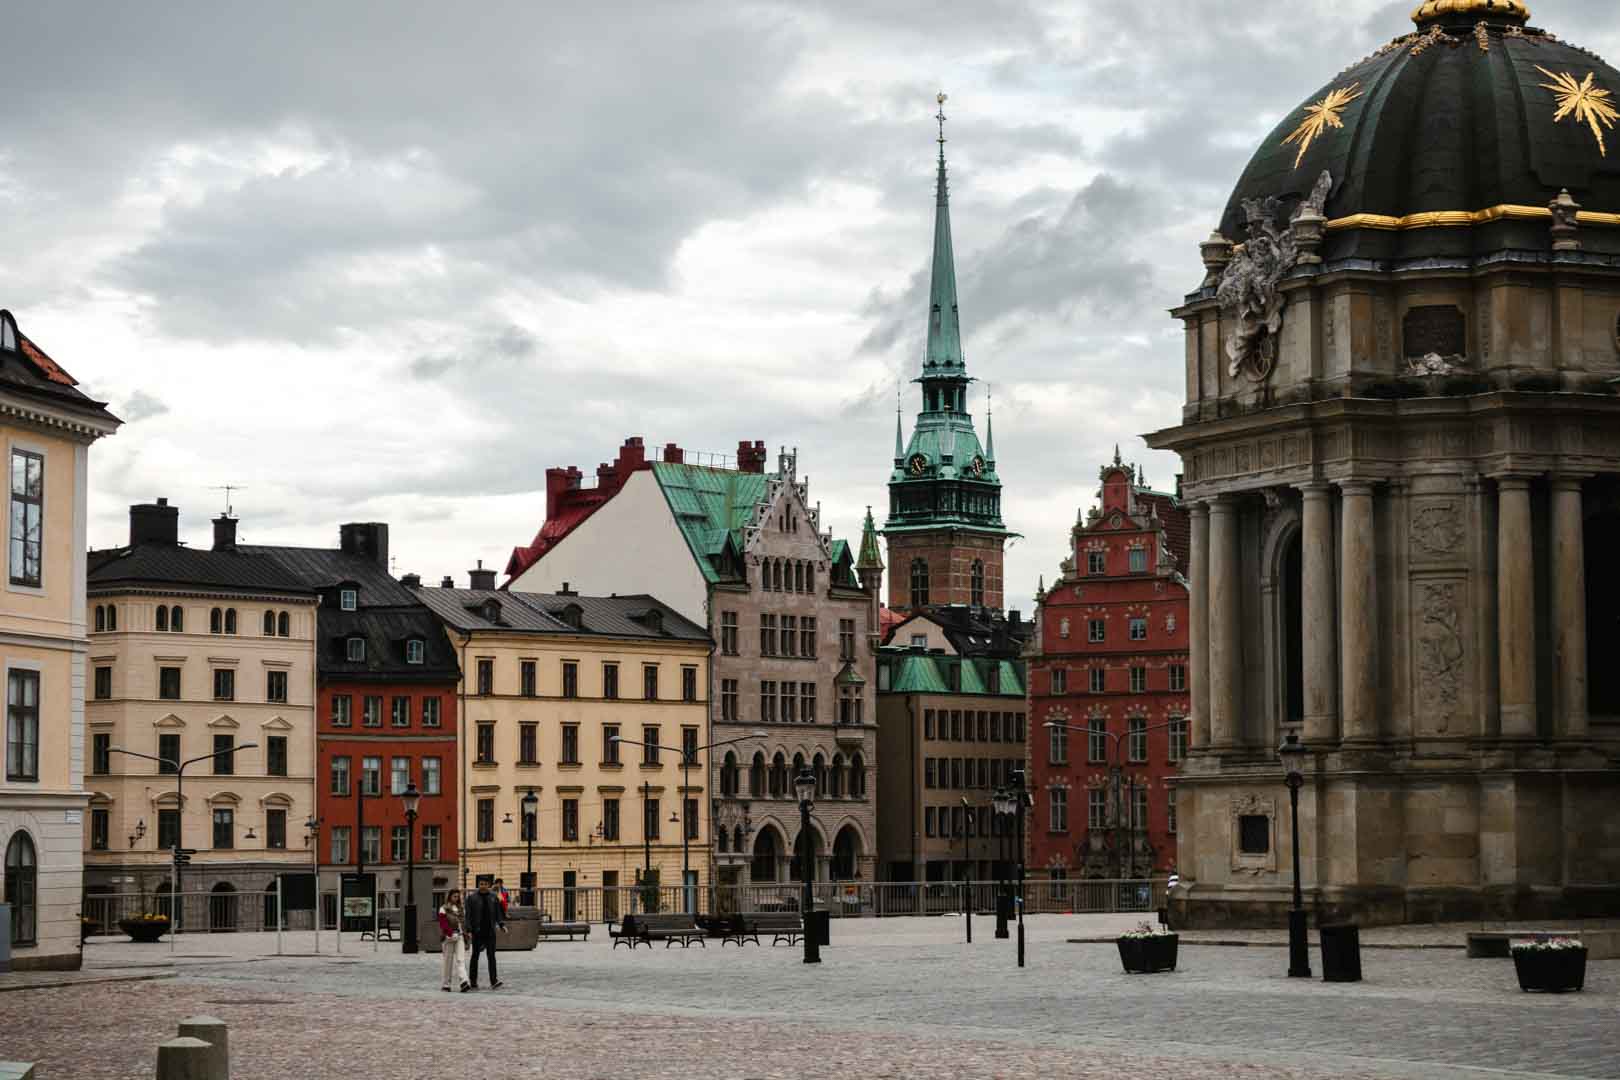 Stockholm Old Town, Sweden